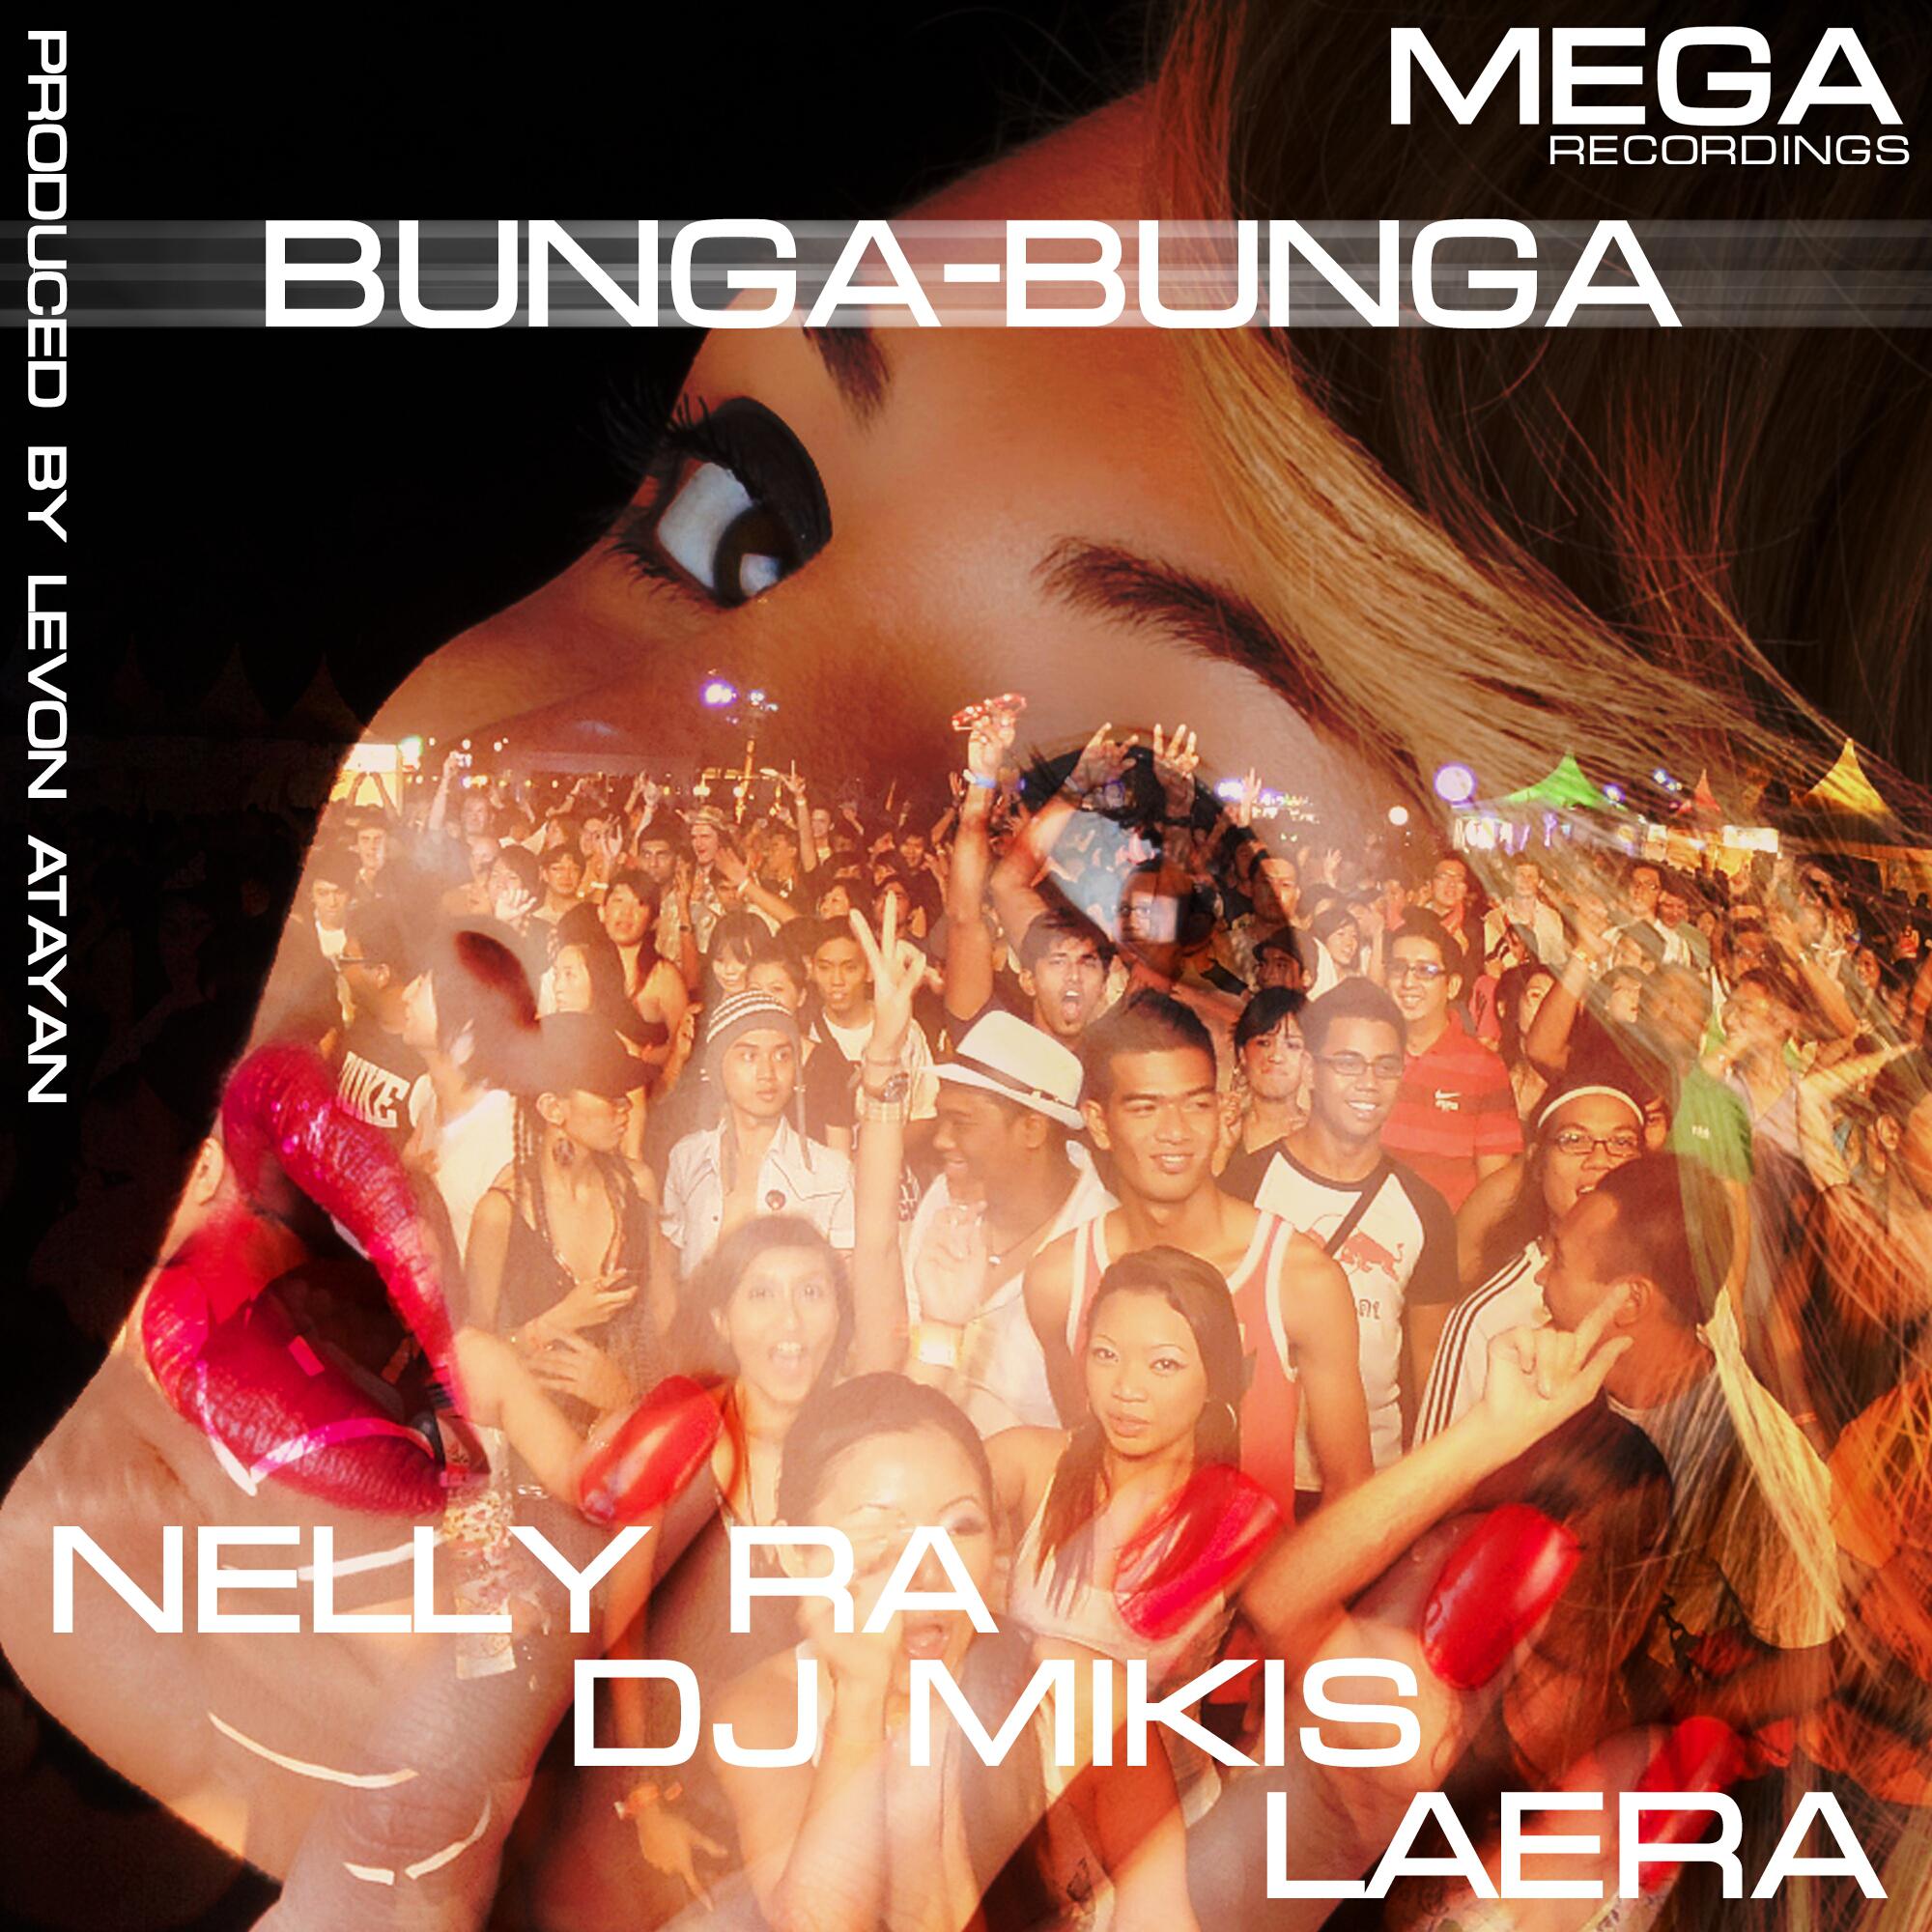 Bunga-Bunga (Extended Mix)